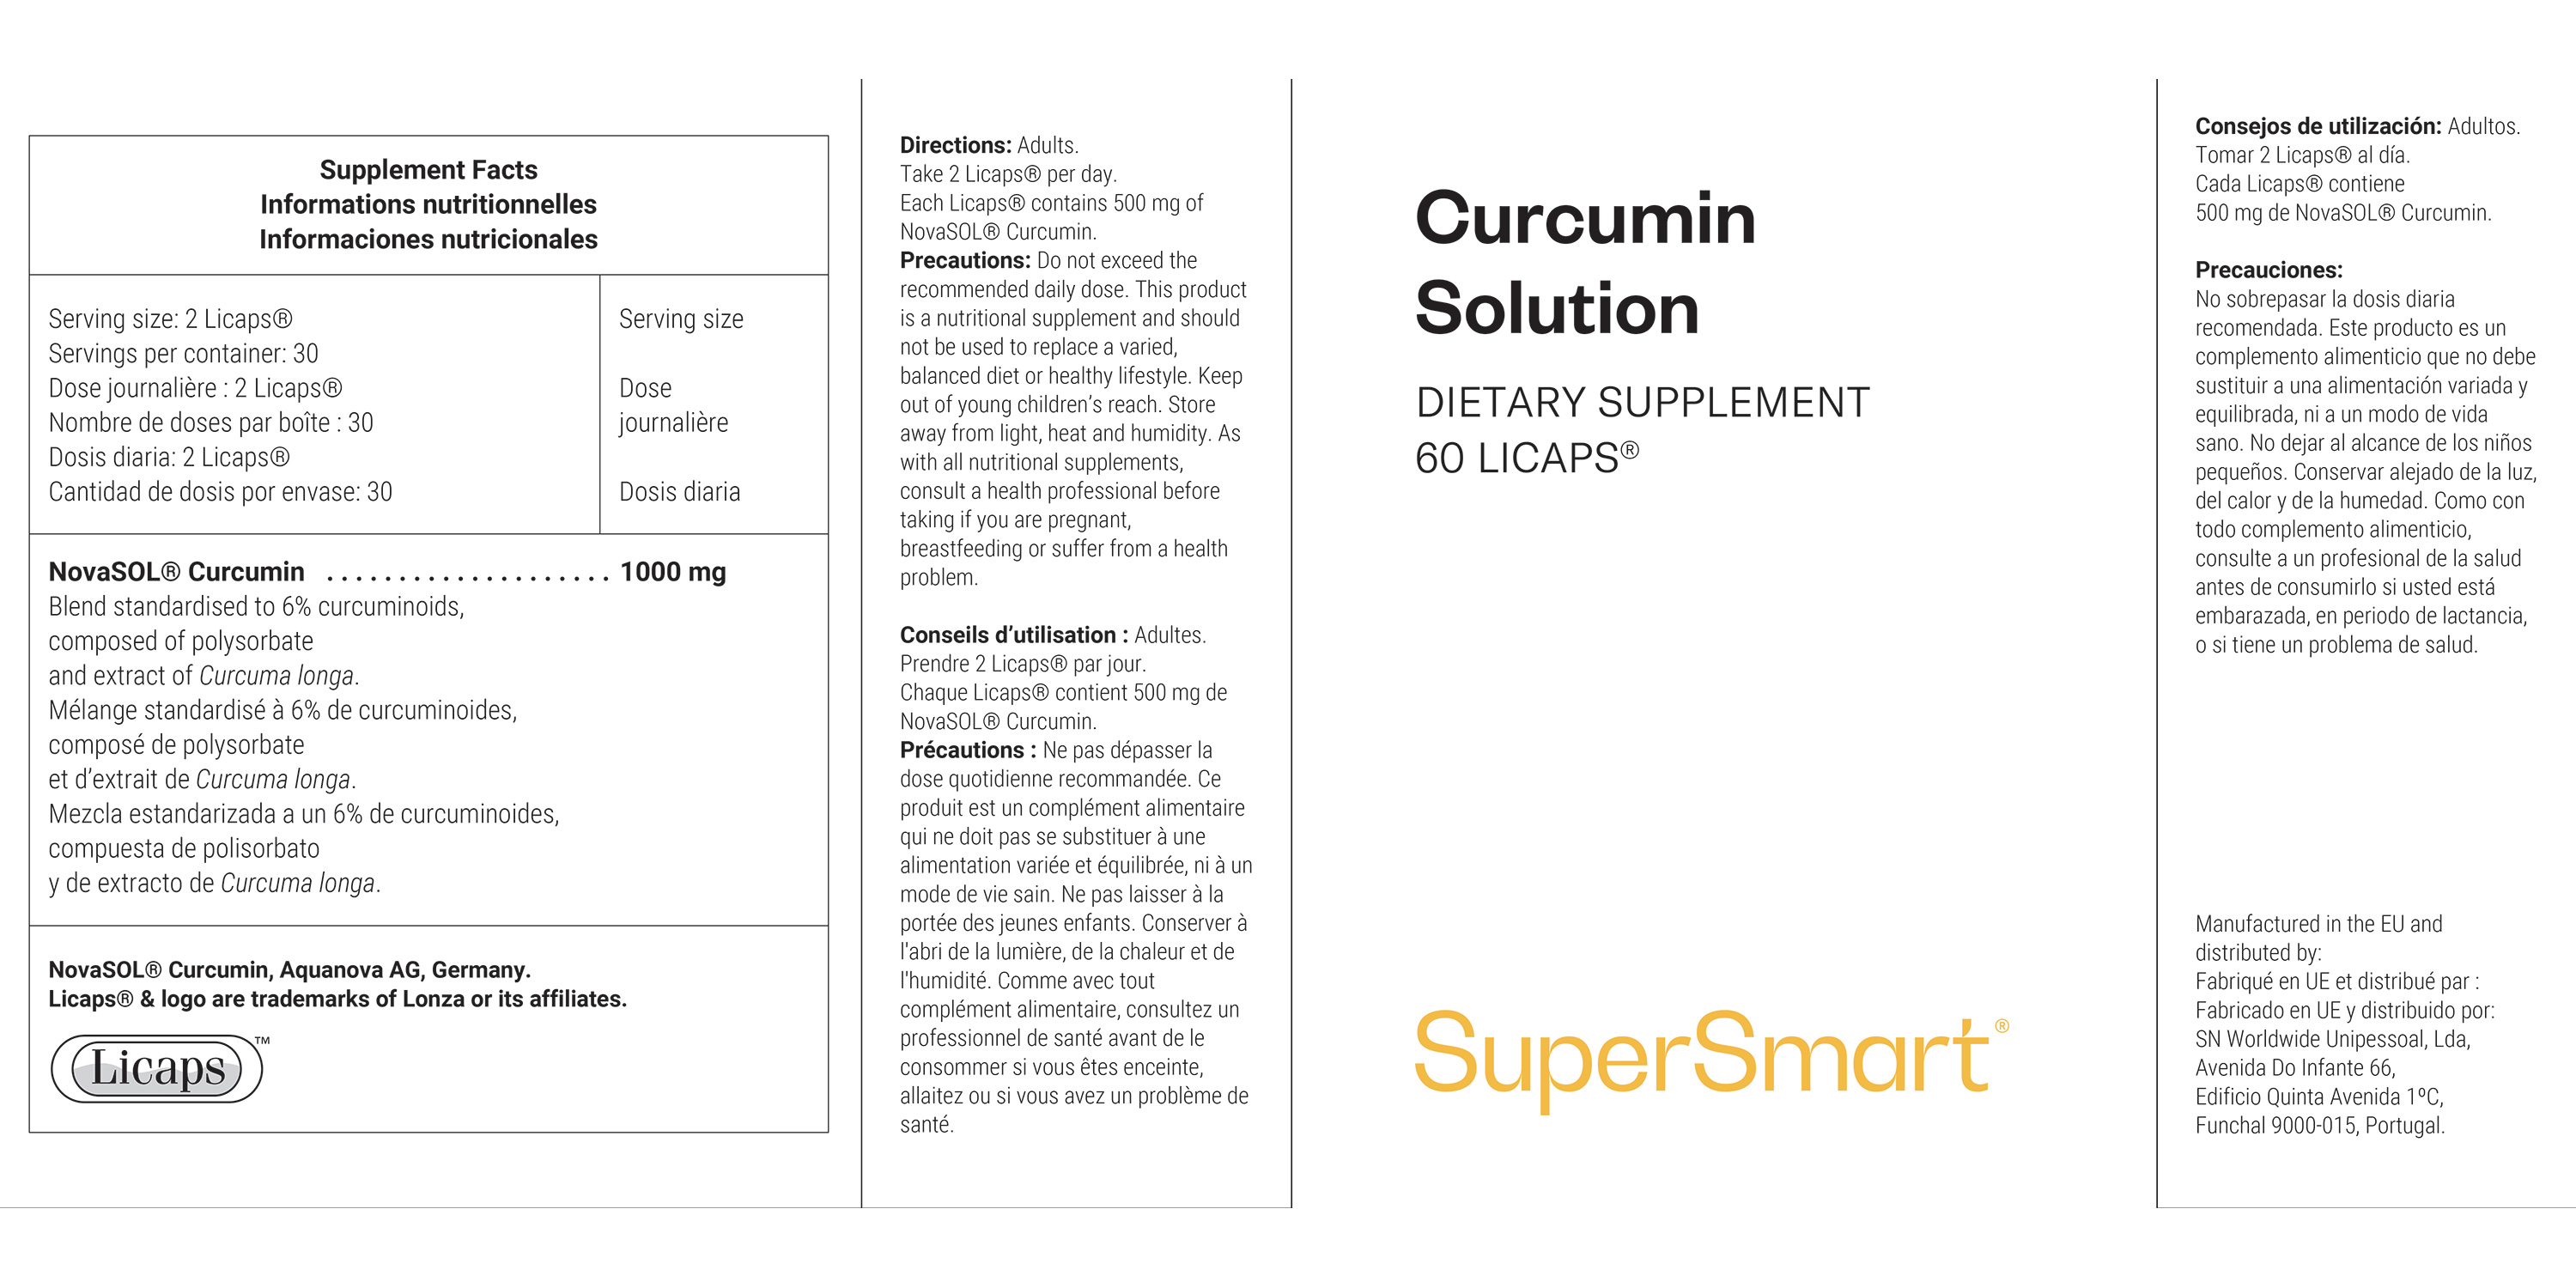 Curcumin Solution Supplement